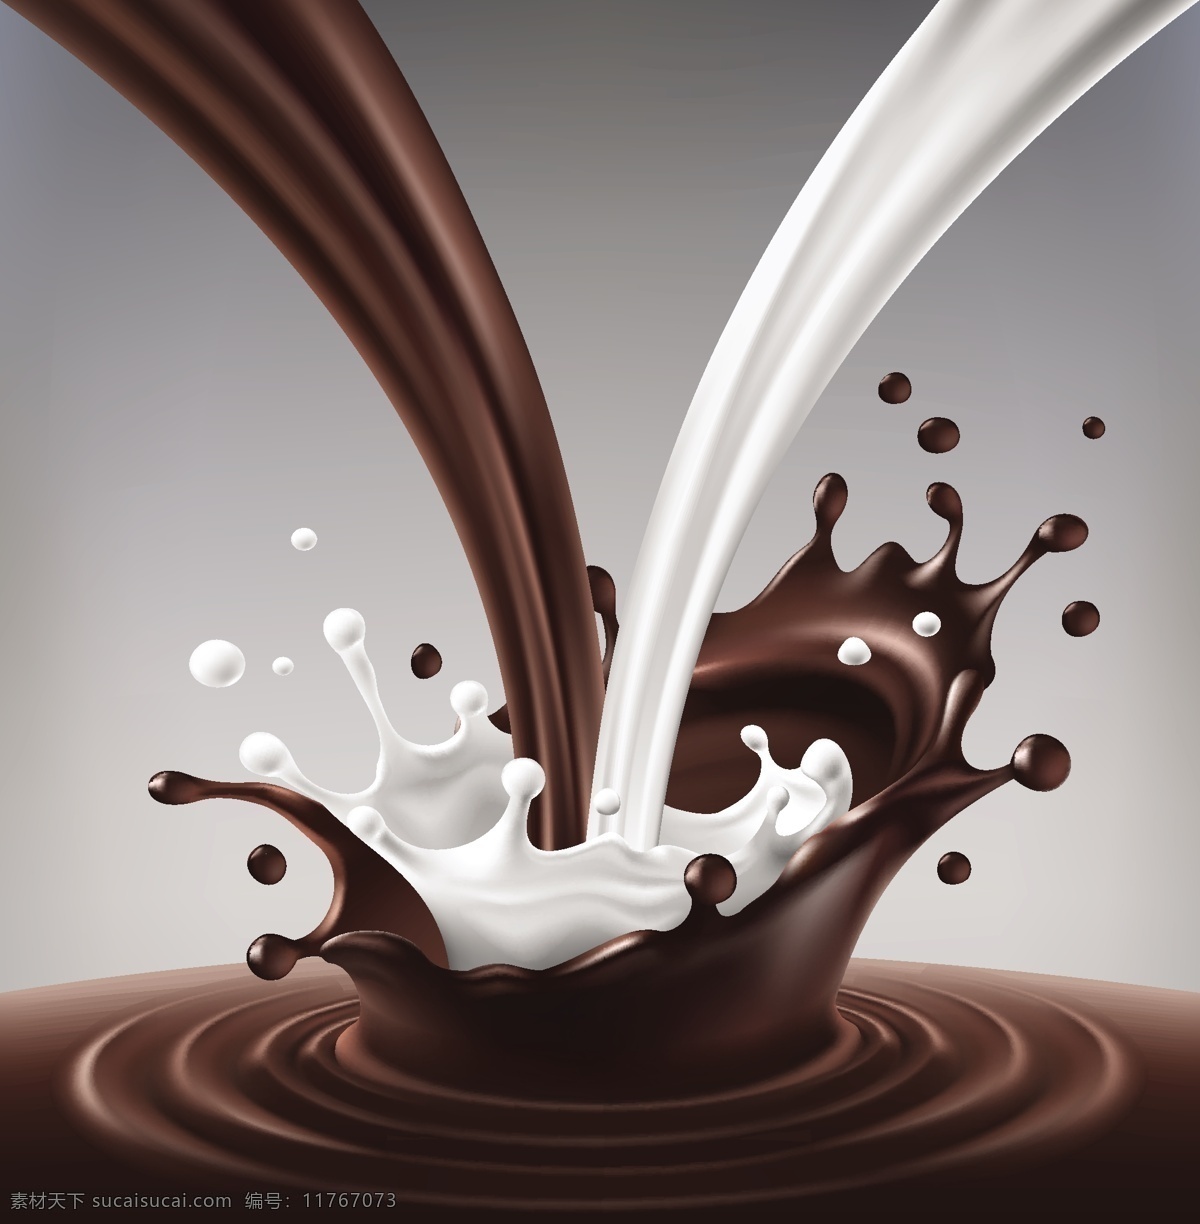 咖啡牛奶 咖啡 牛奶 咖啡效果图 牛奶效果图 食品包装 水滴 国内广告设计